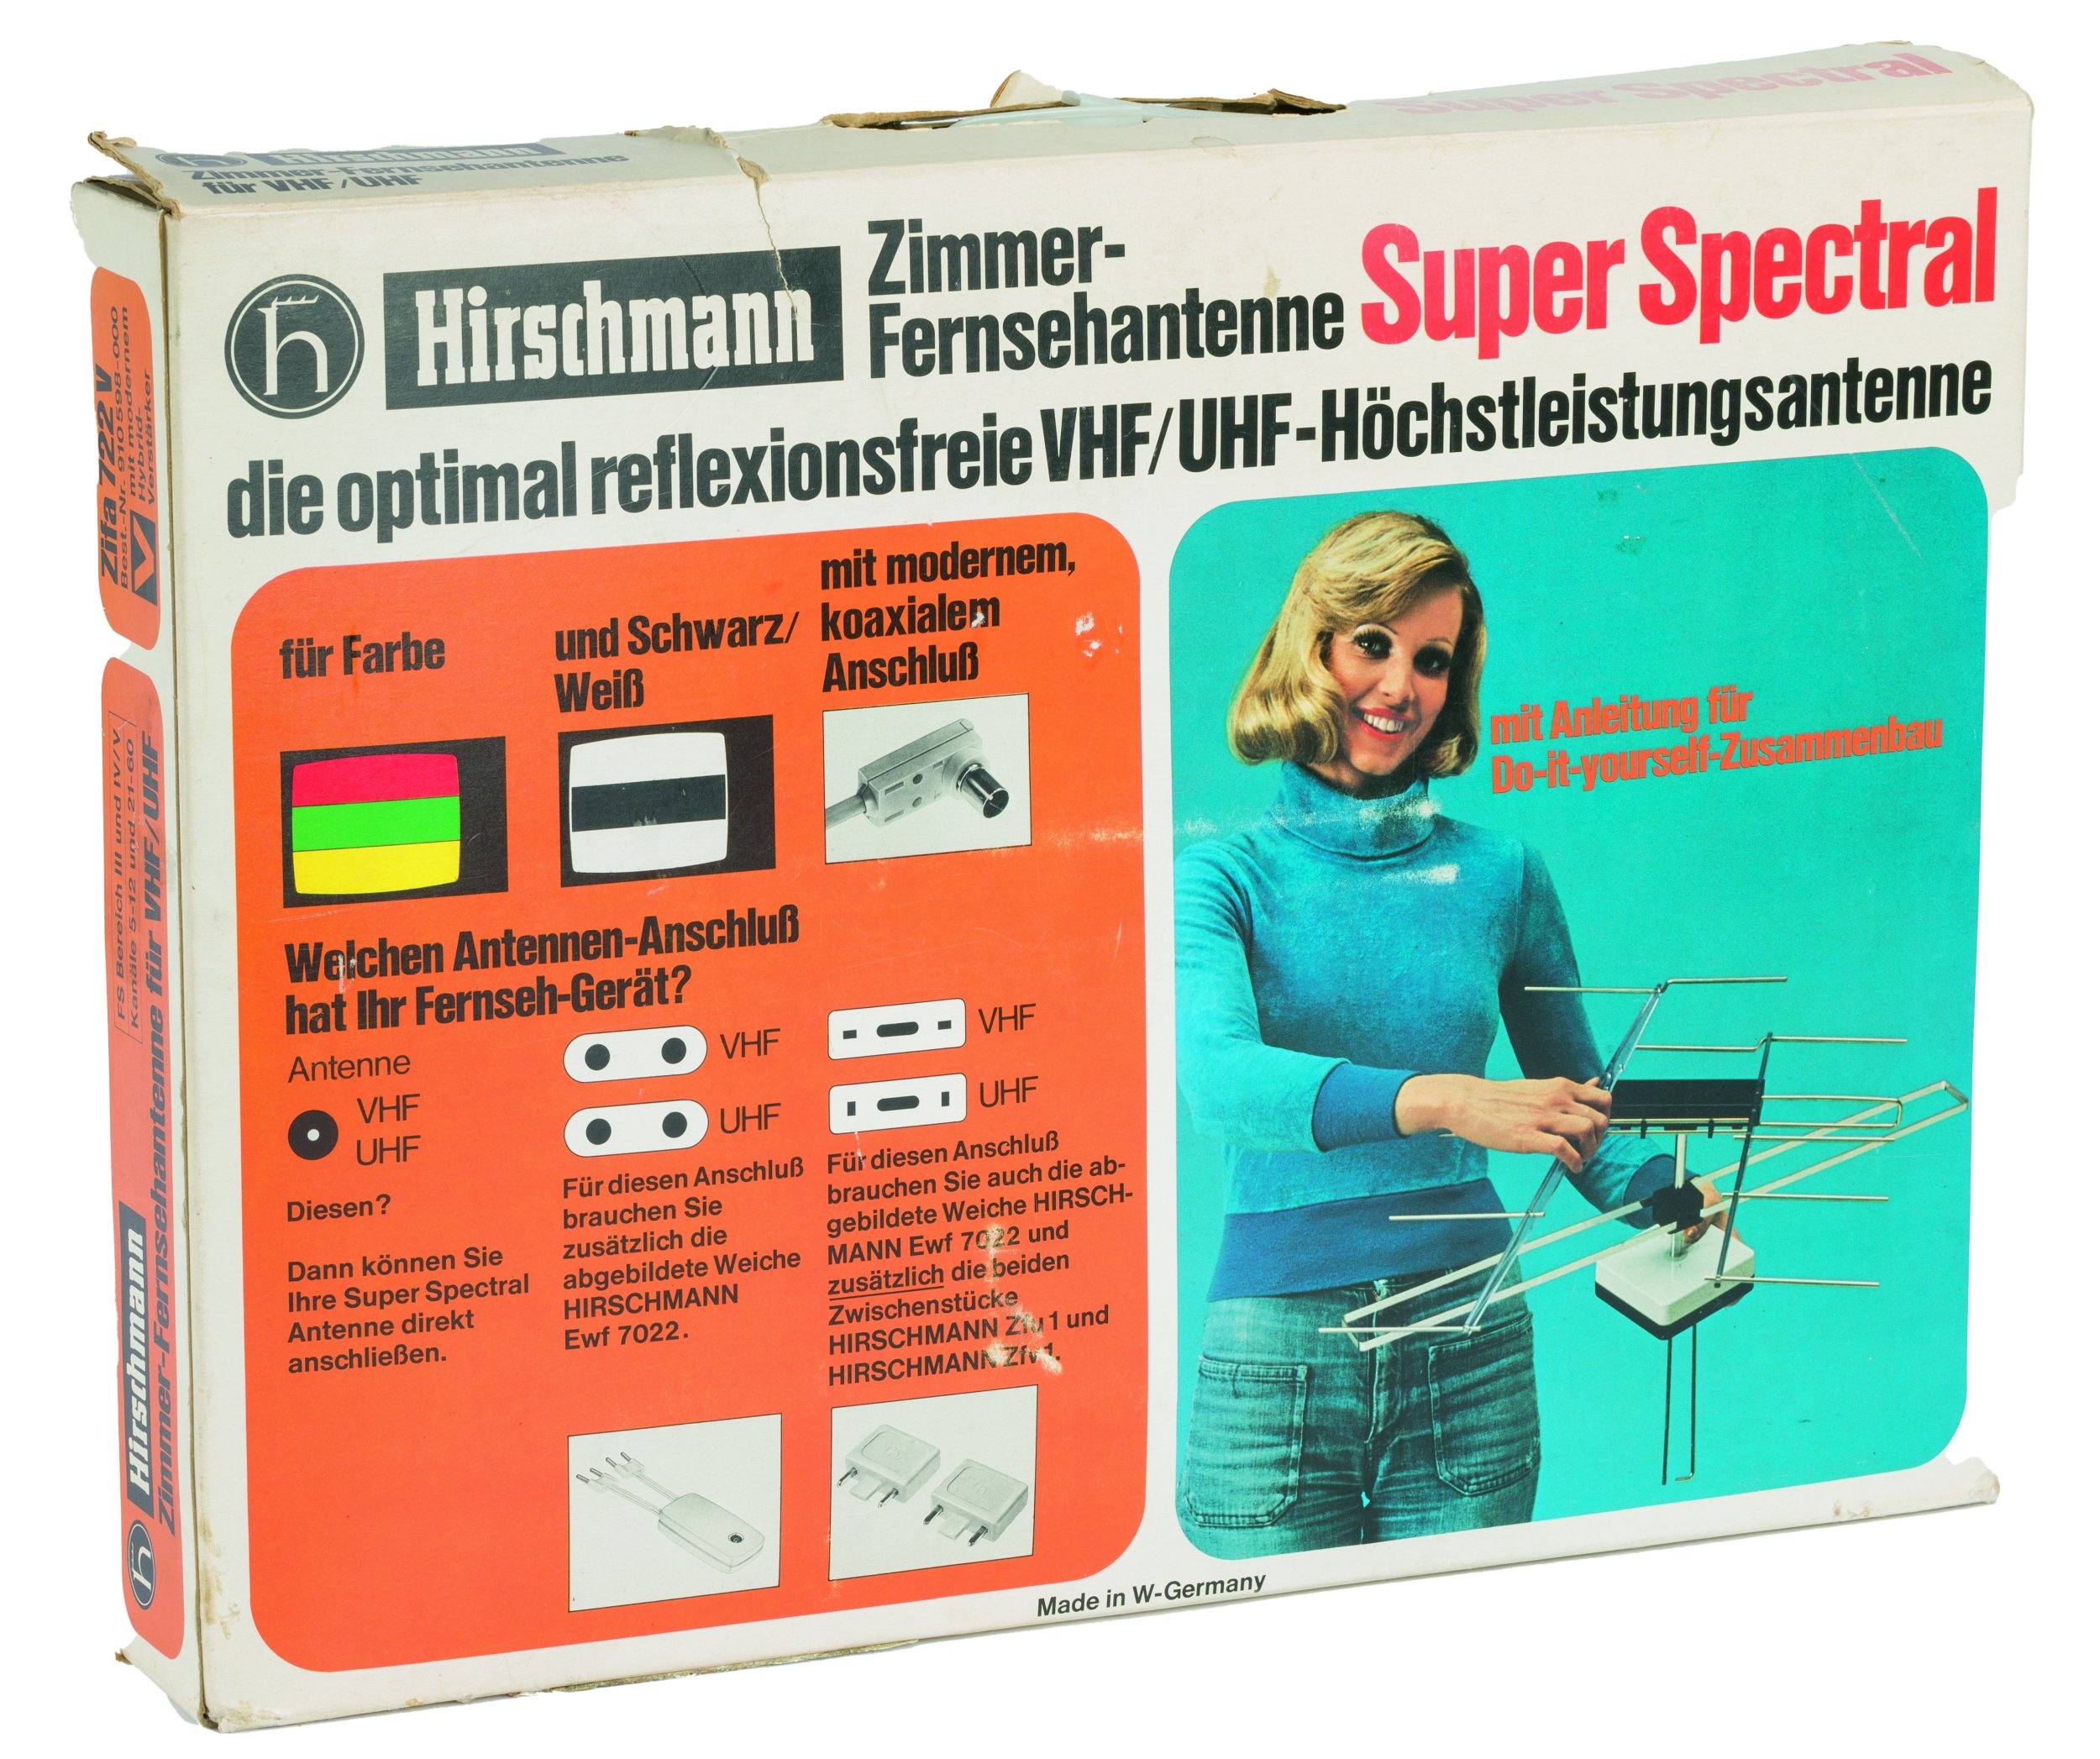 Zimmer-Fernsehantenne Super Spectral (Stadtmuseum im Gelben Haus Esslingen CC BY-NC-SA)